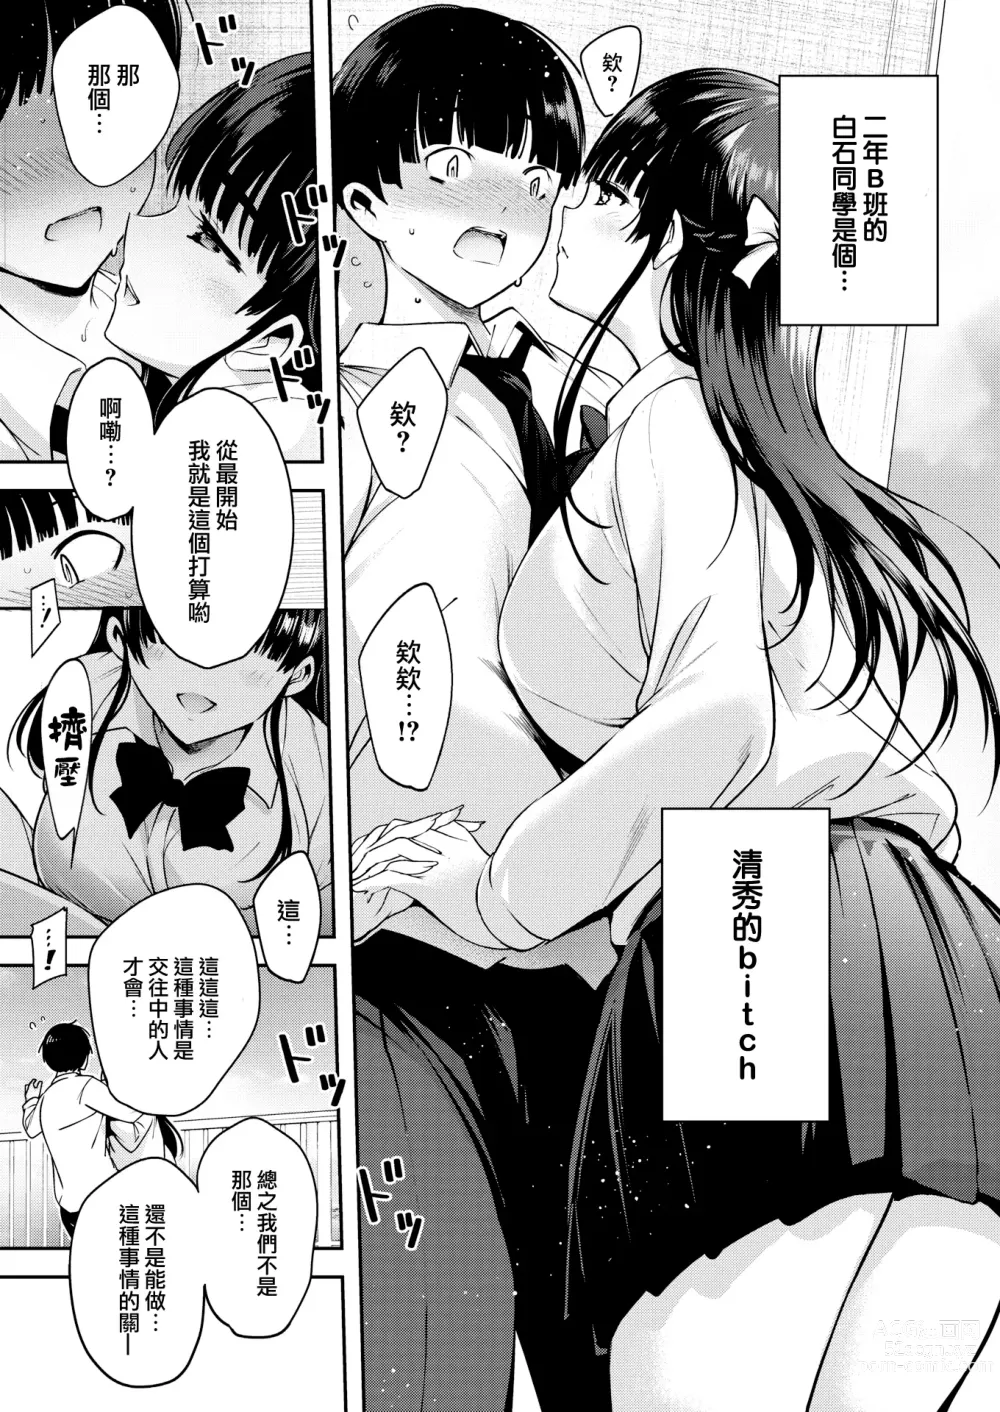 Page 6 of manga Aoi Sora no Mashita de